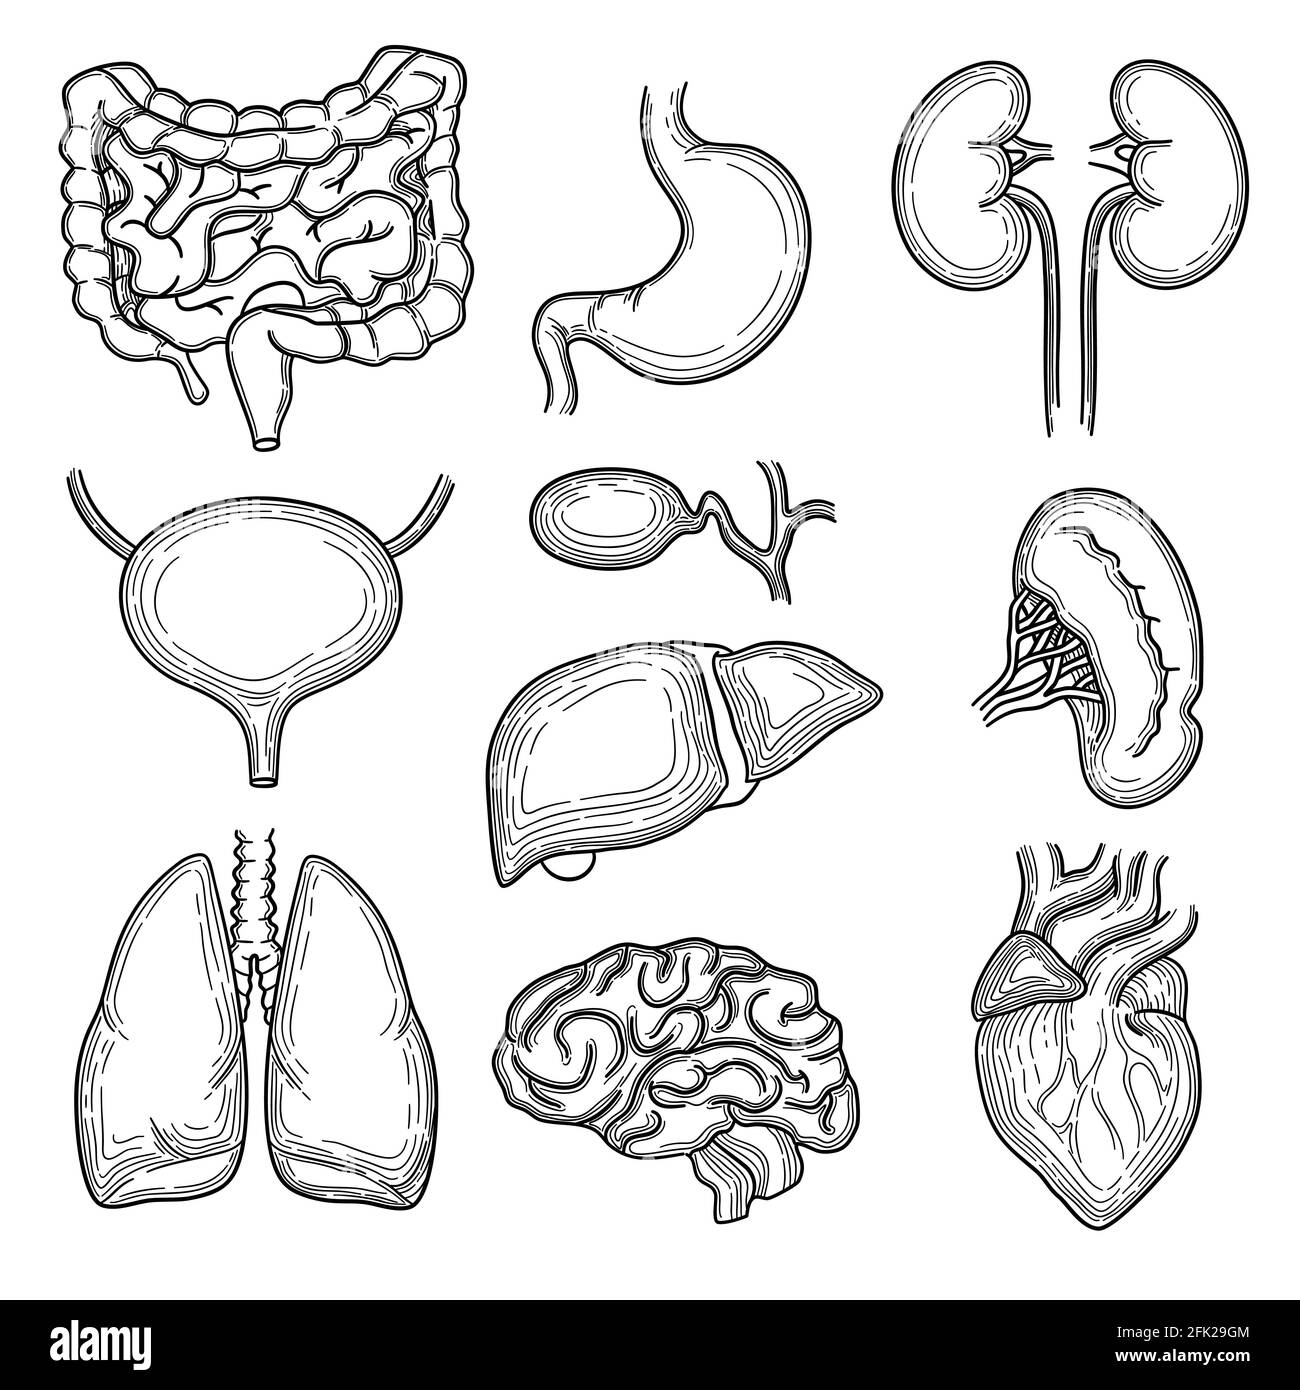 Skizze der menschlichen Organe. Gehirn Niere Herz Magen Anatomie Körperteile Vektor Hand gezeichnet Set Stock Vektor